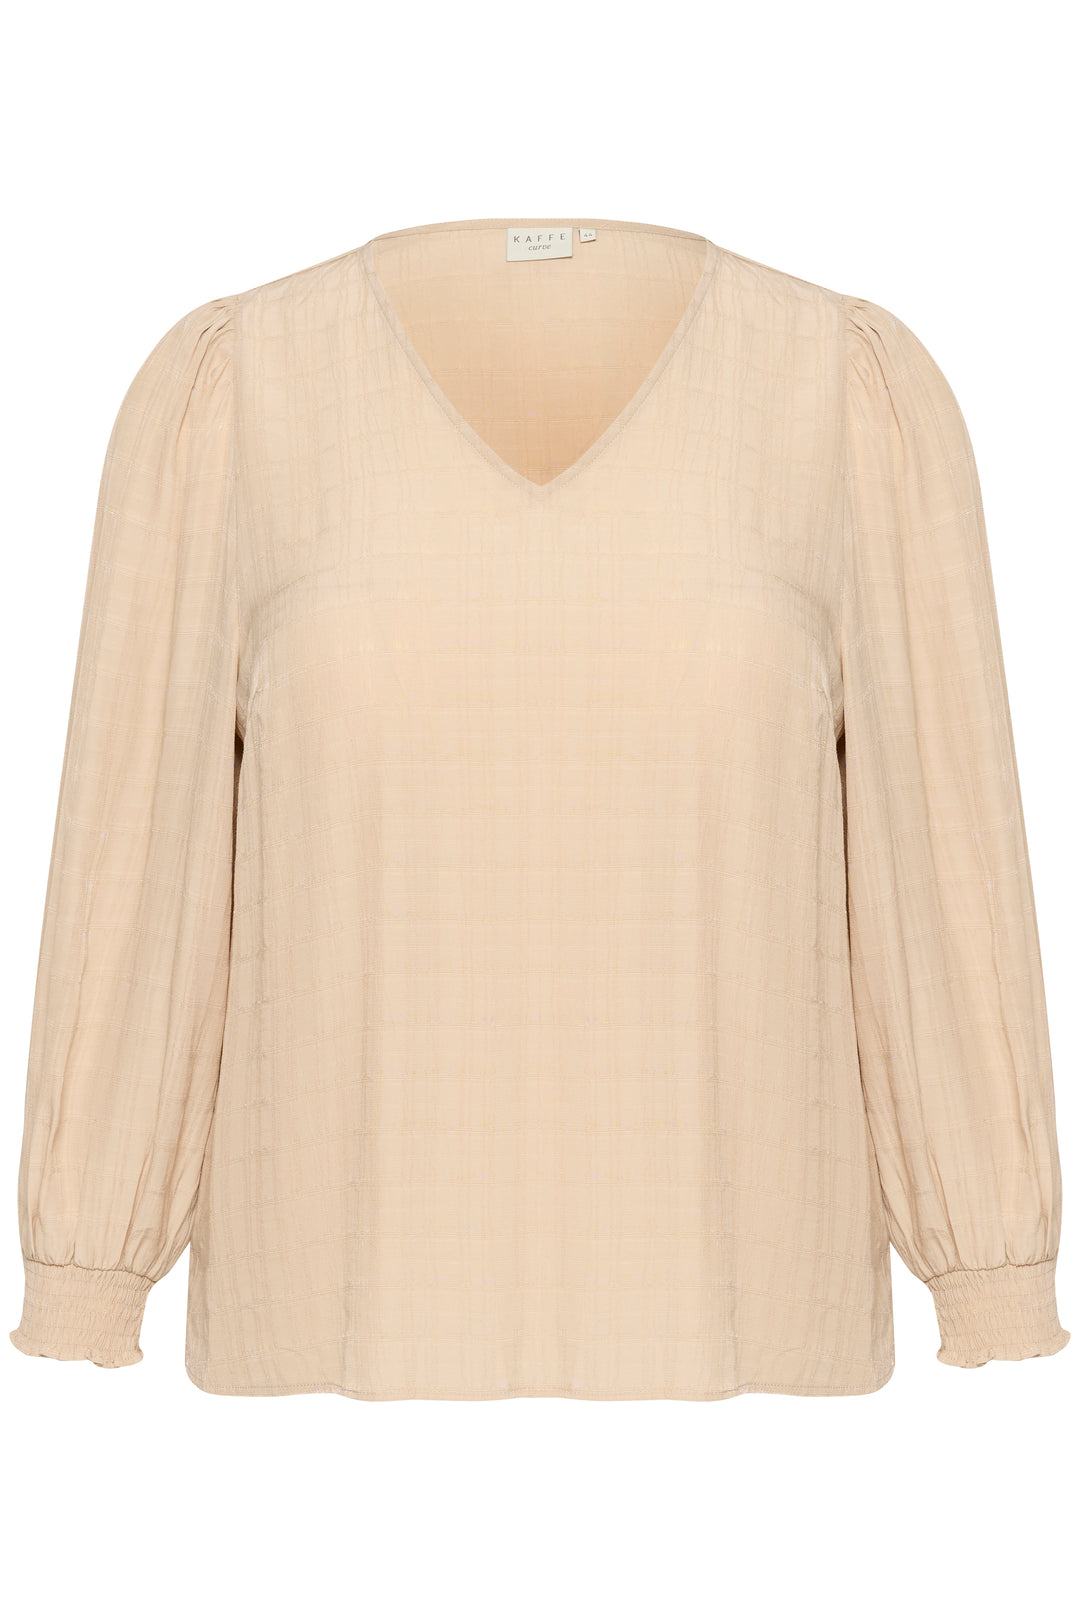 tijdloze beige blouse - kaffe curve - - grote maten - dameskleding - kledingwinkel - herent - leuven